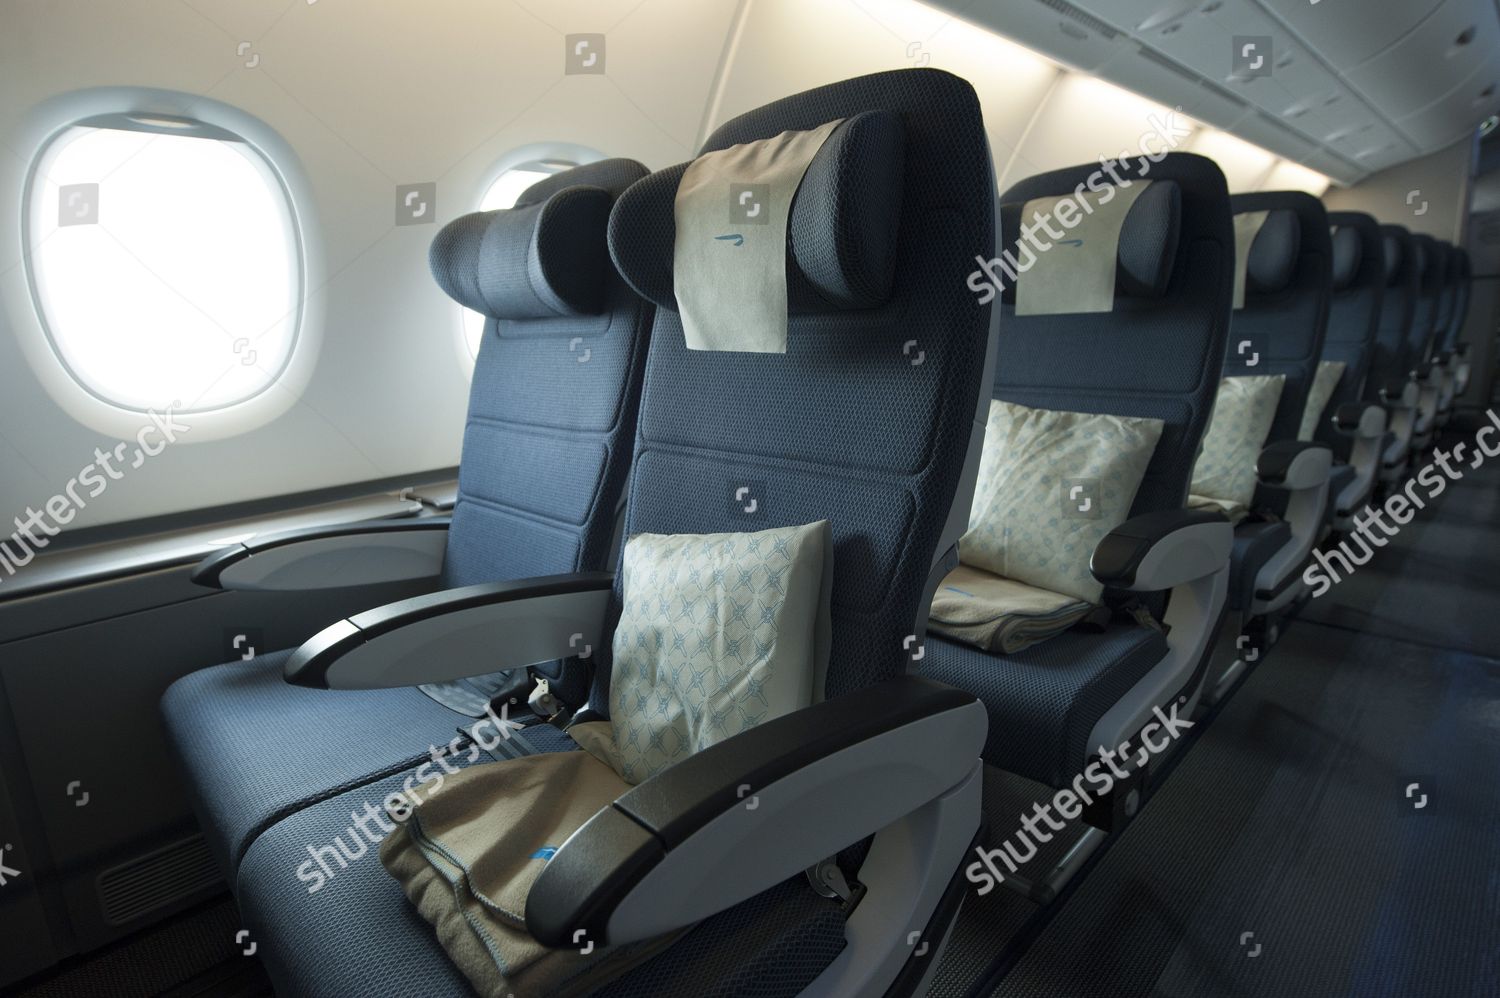 Boeing 787 British Airways Seats